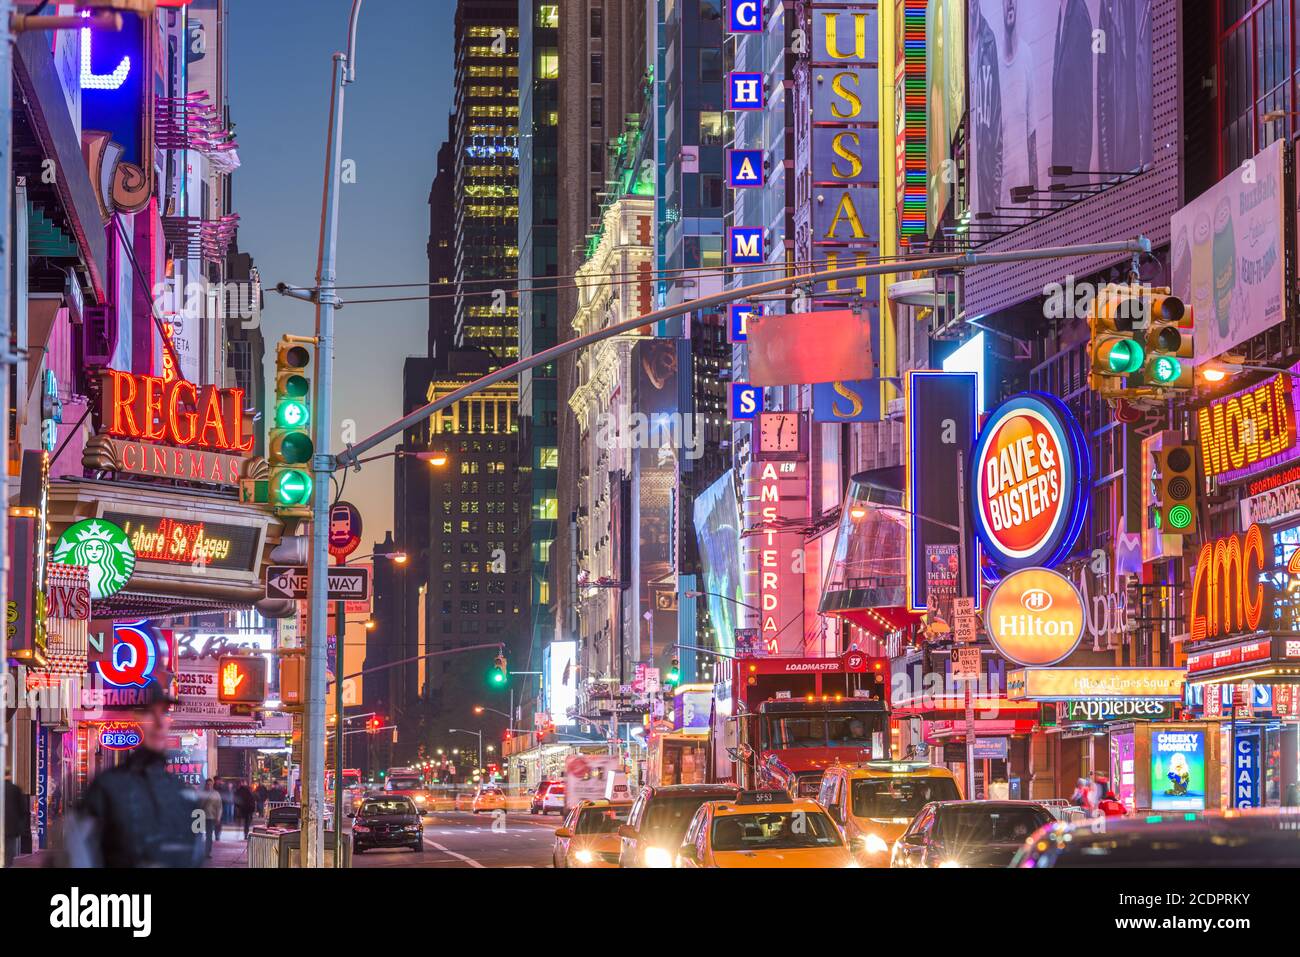 NEW YORK - 14 NOVEMBRE 2016 : déplacement du trafic ci-dessous les enseignes lumineuses de la 42e Rue. La rue abrite de nombreux théâtres, magasins, Banque D'Images